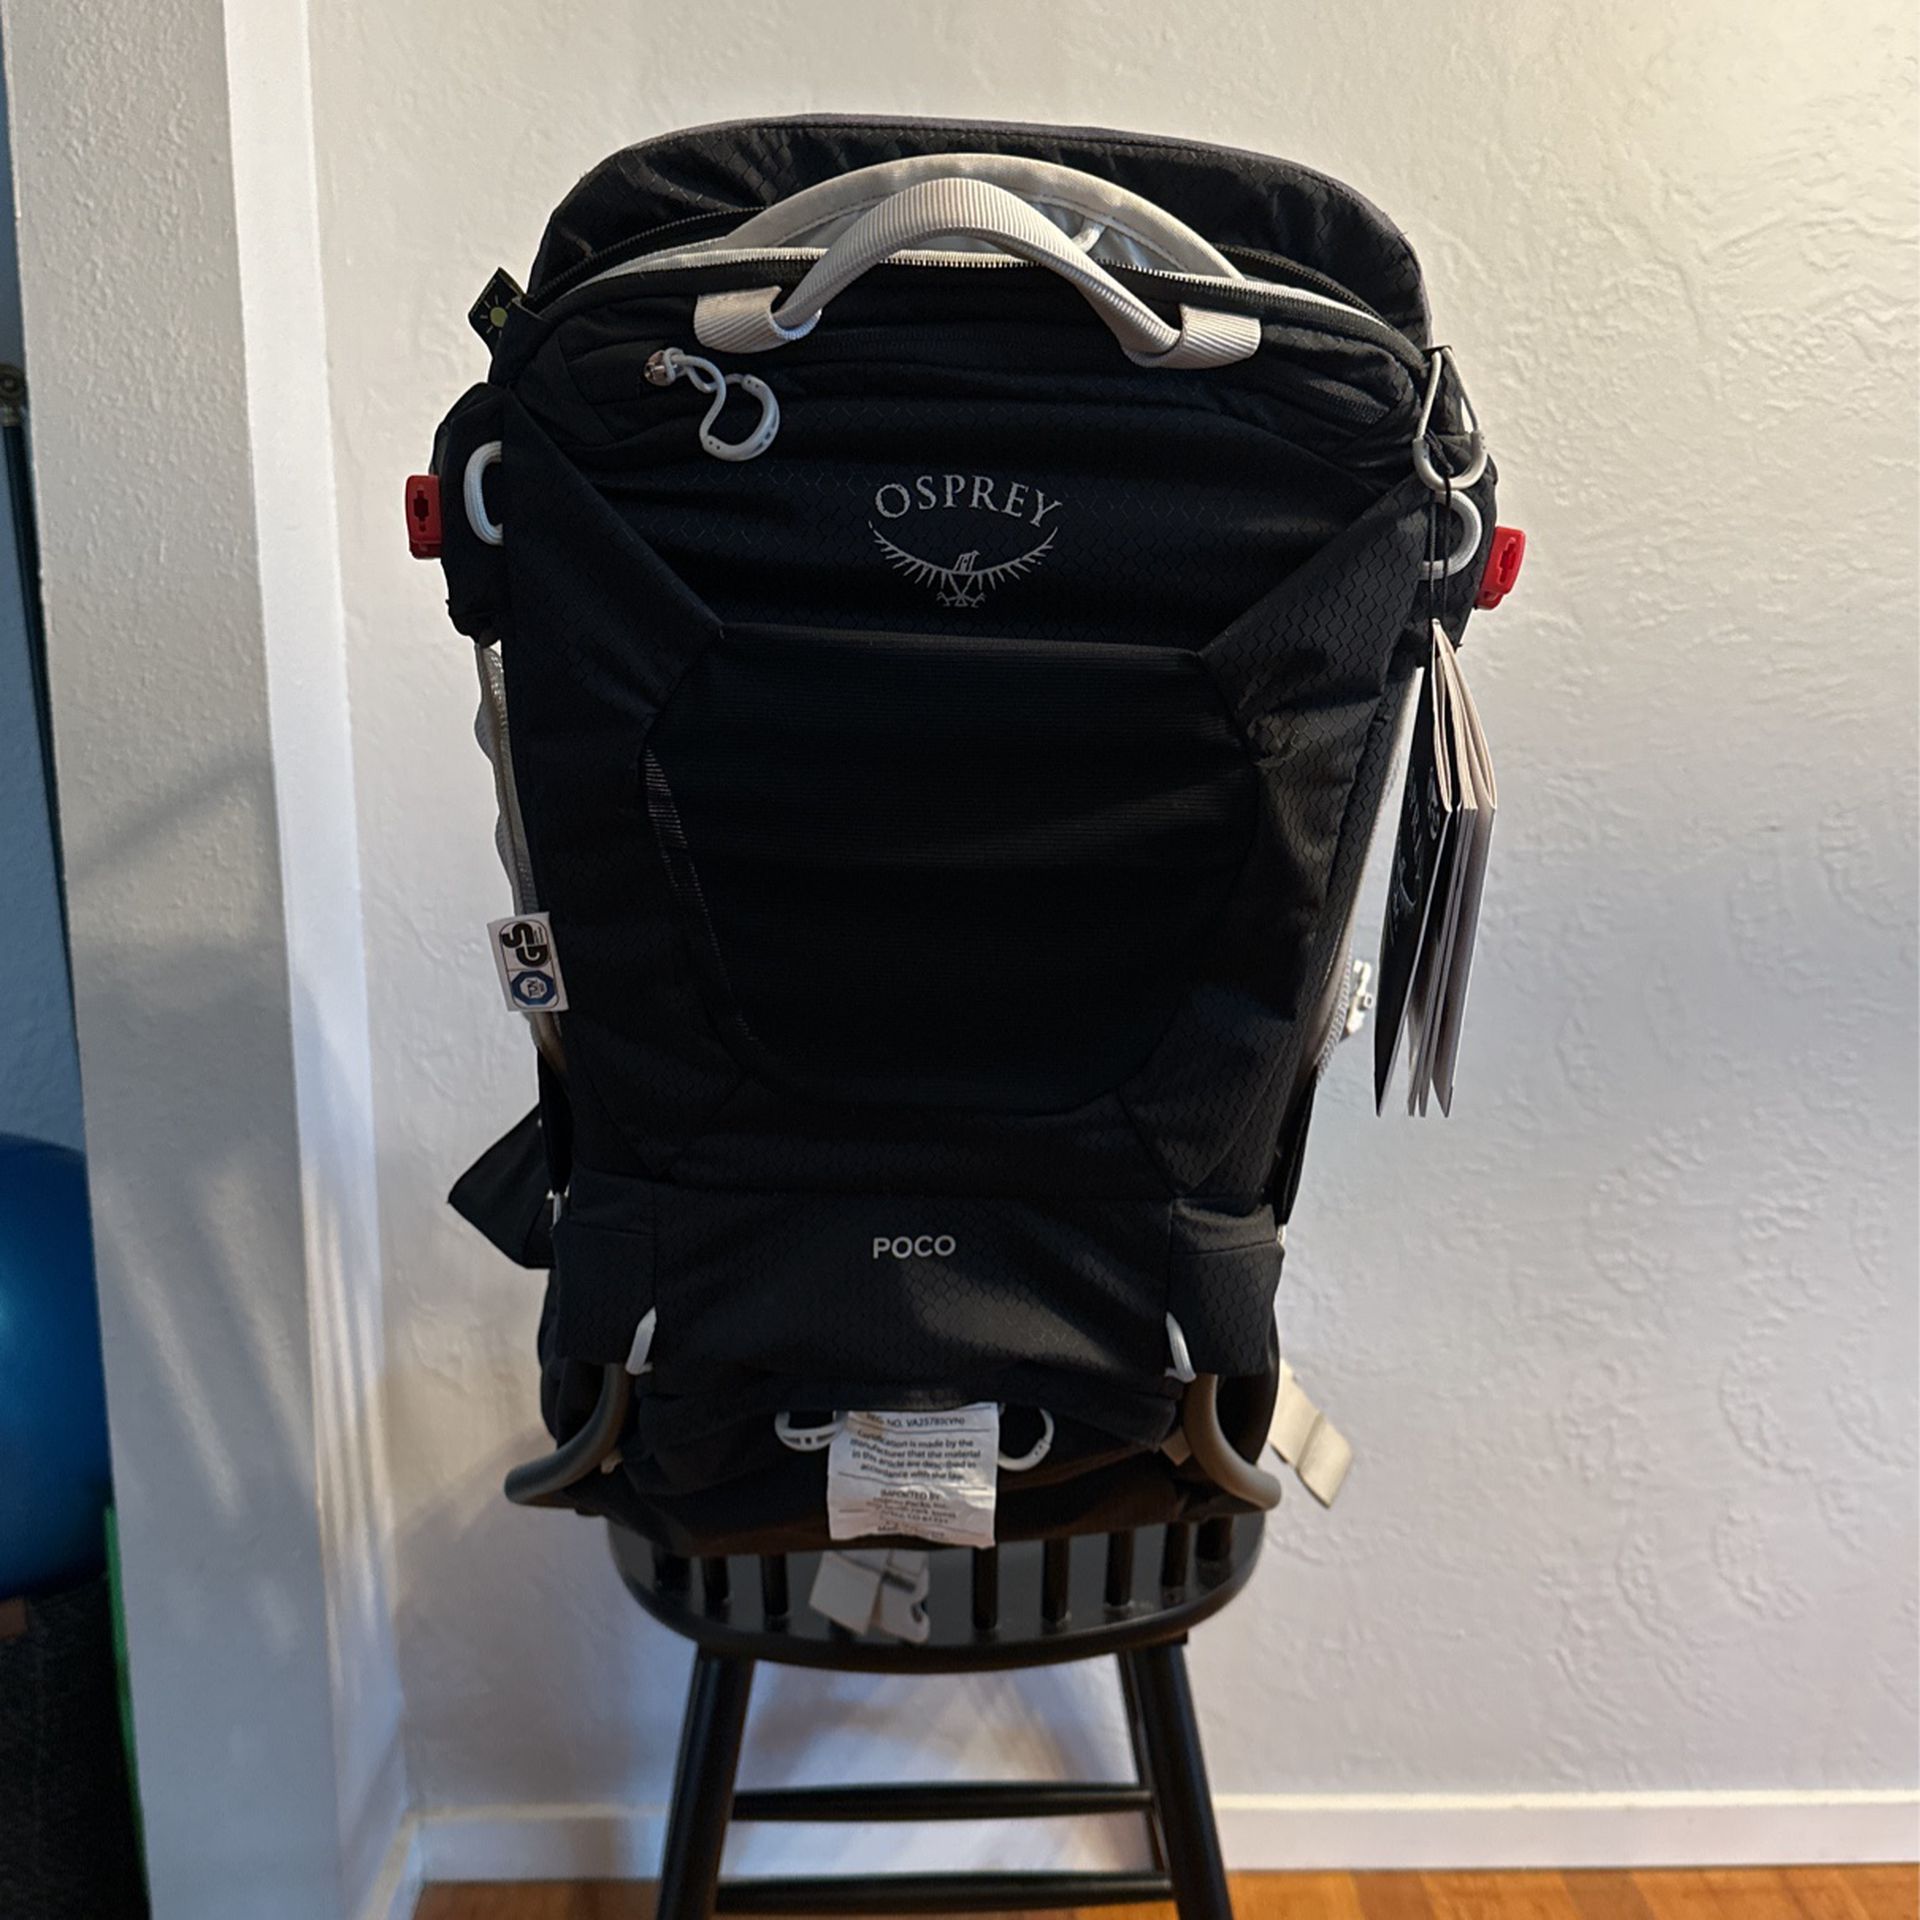 Osprey Poco Child Carrier Backpack - Starry Black